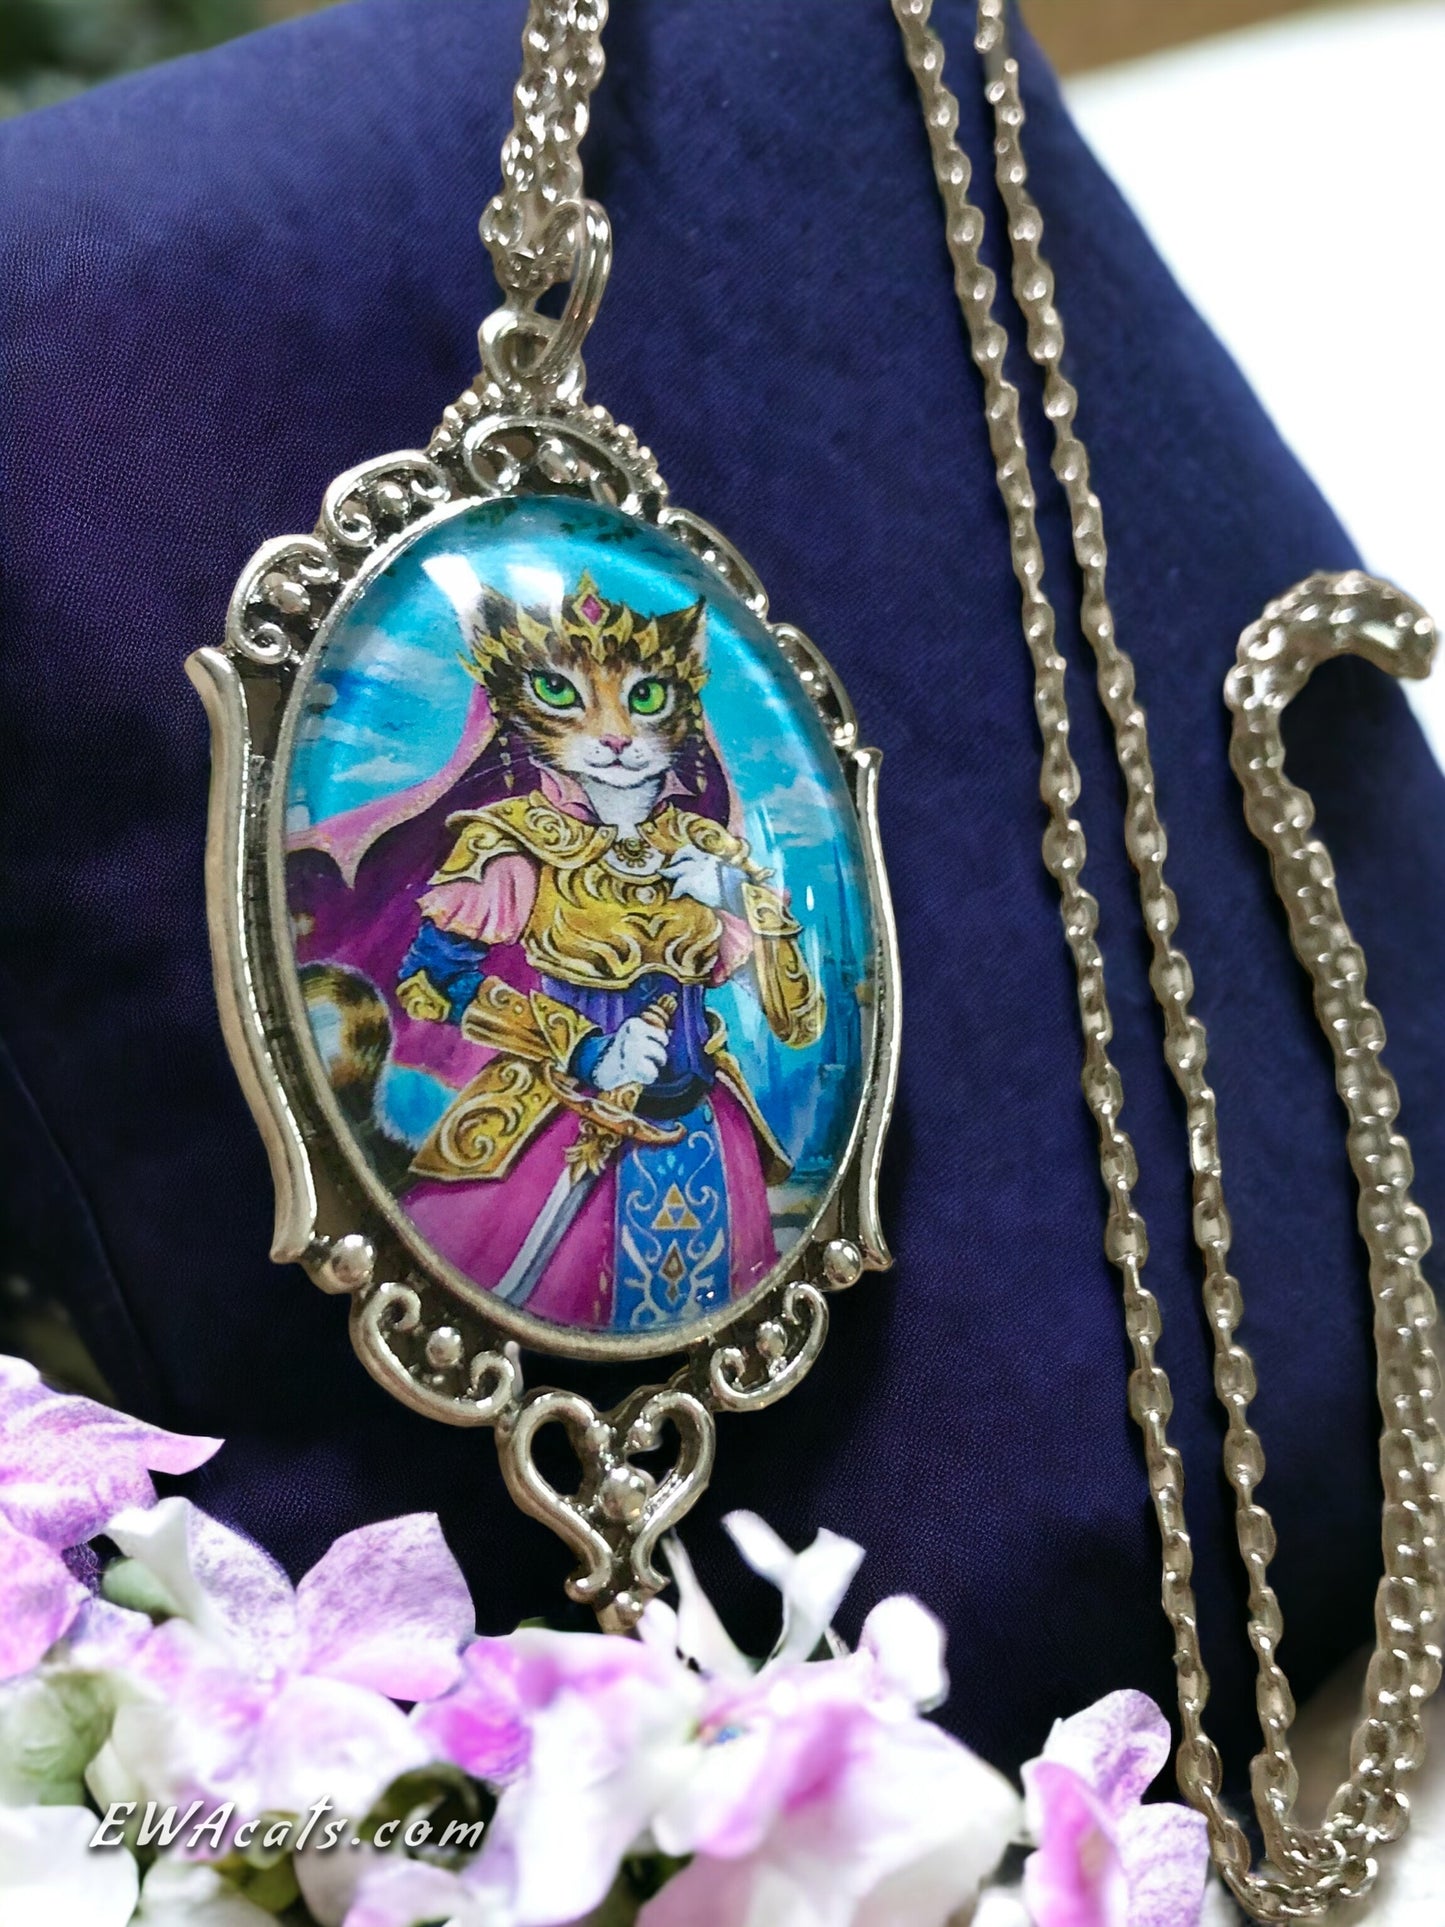 Necklace "Purrincess Zelda"